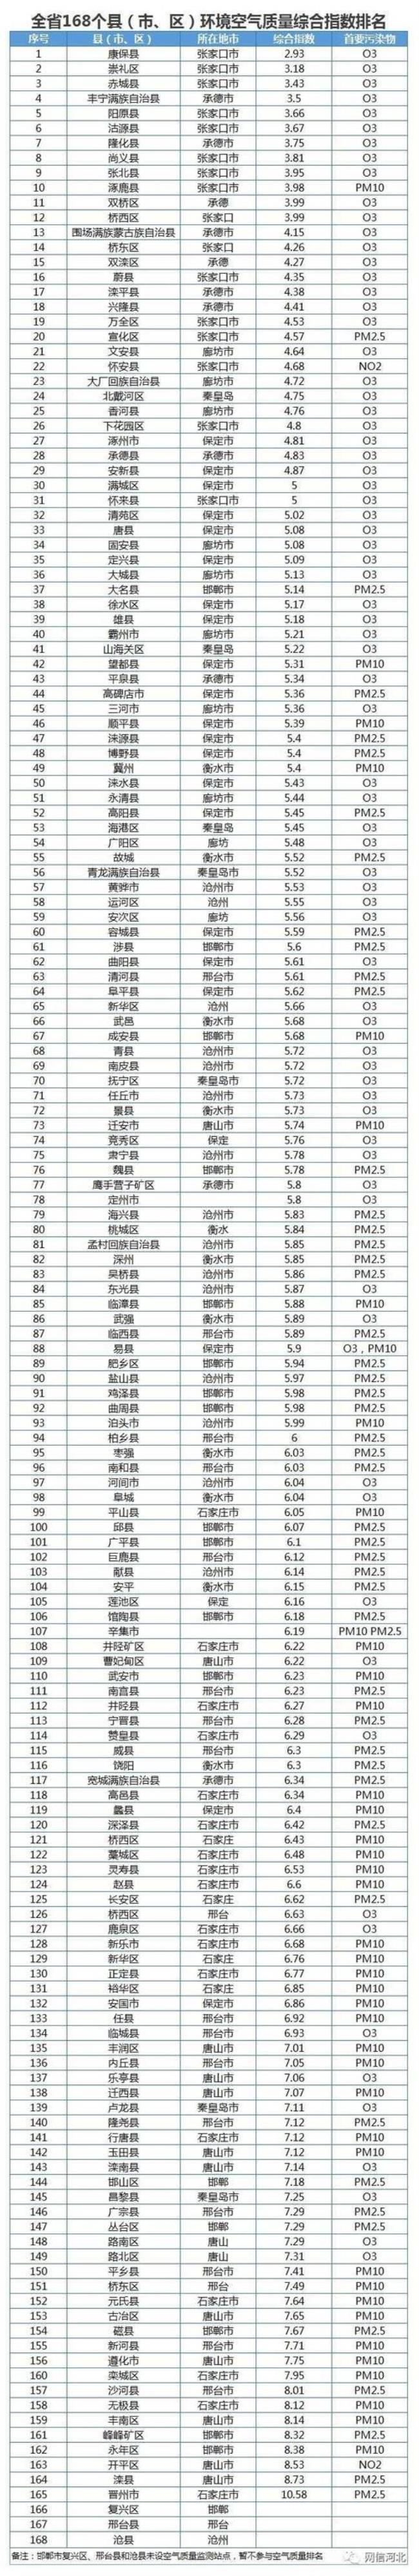 河北省人口最多的县排名